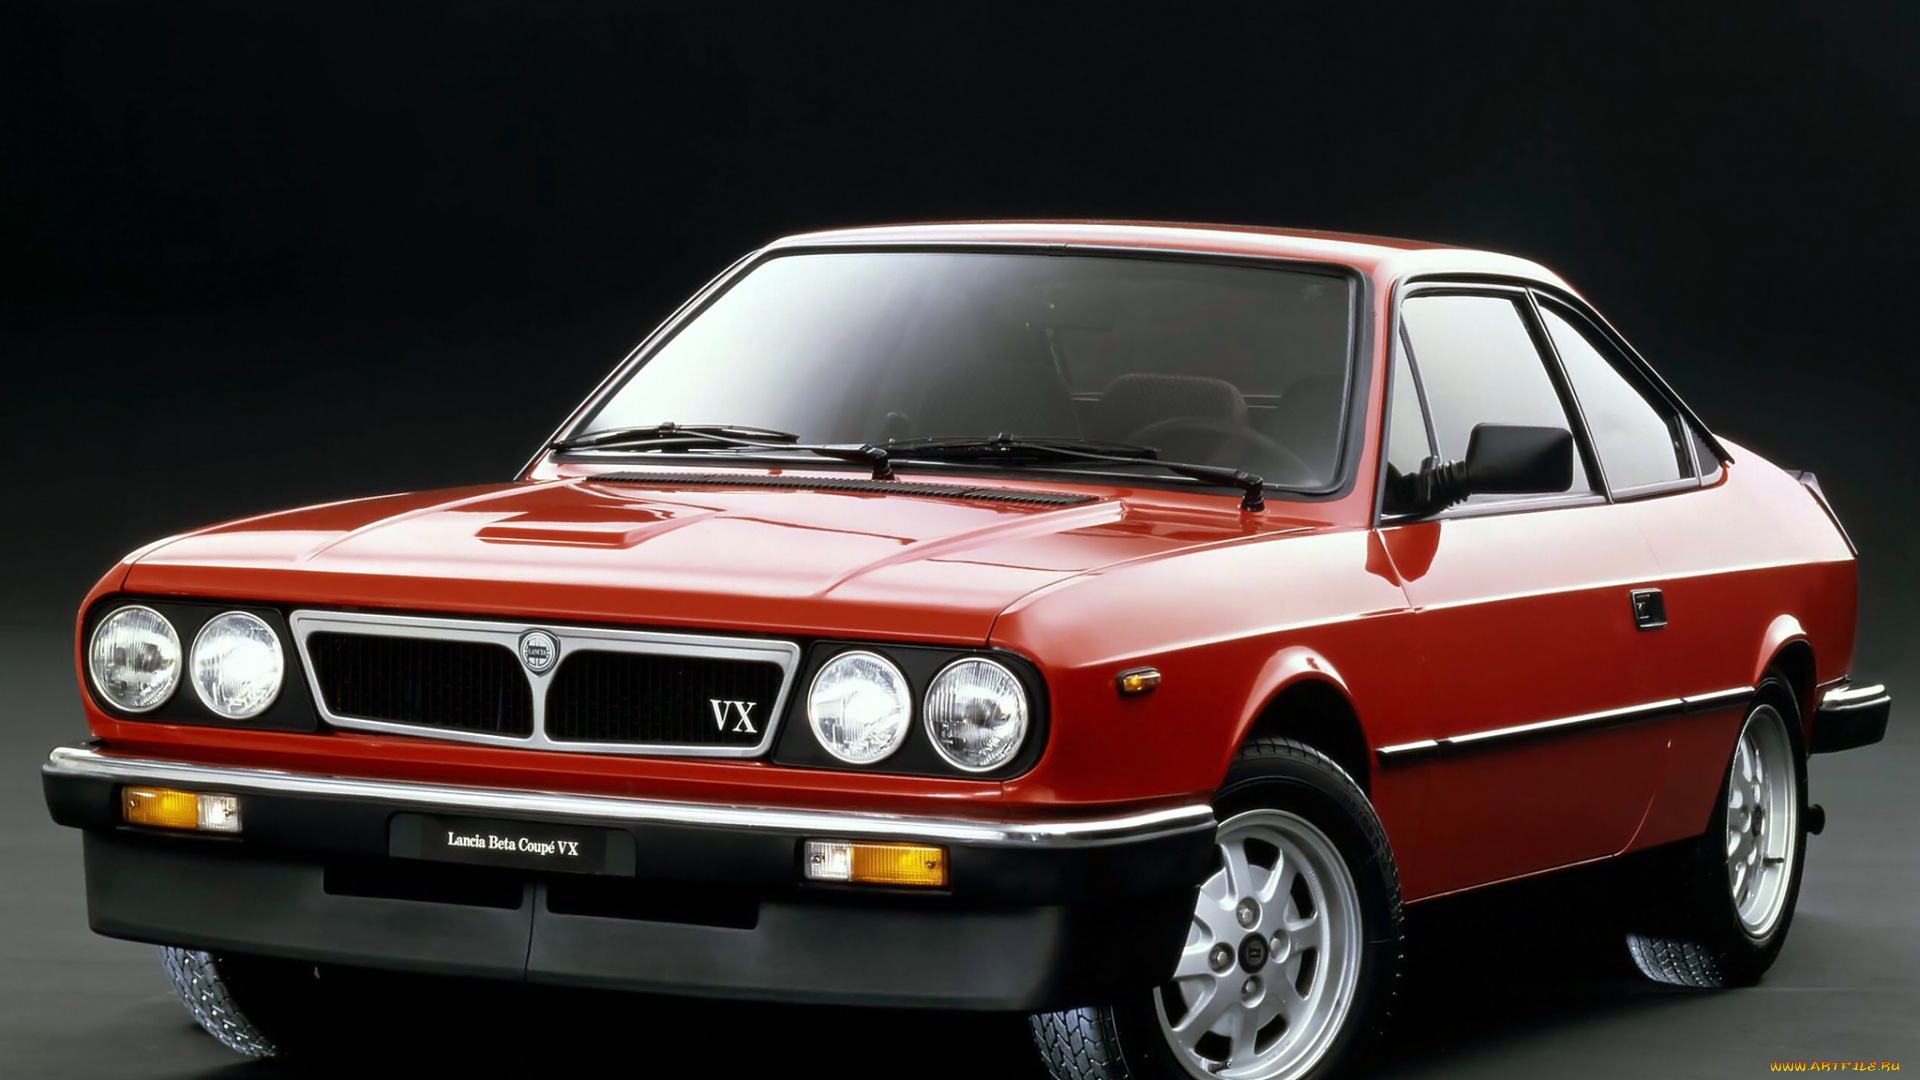 lancia, beta, coupe, vx, 1982, автомобили, lancia, vx, coupe, 1982, beta